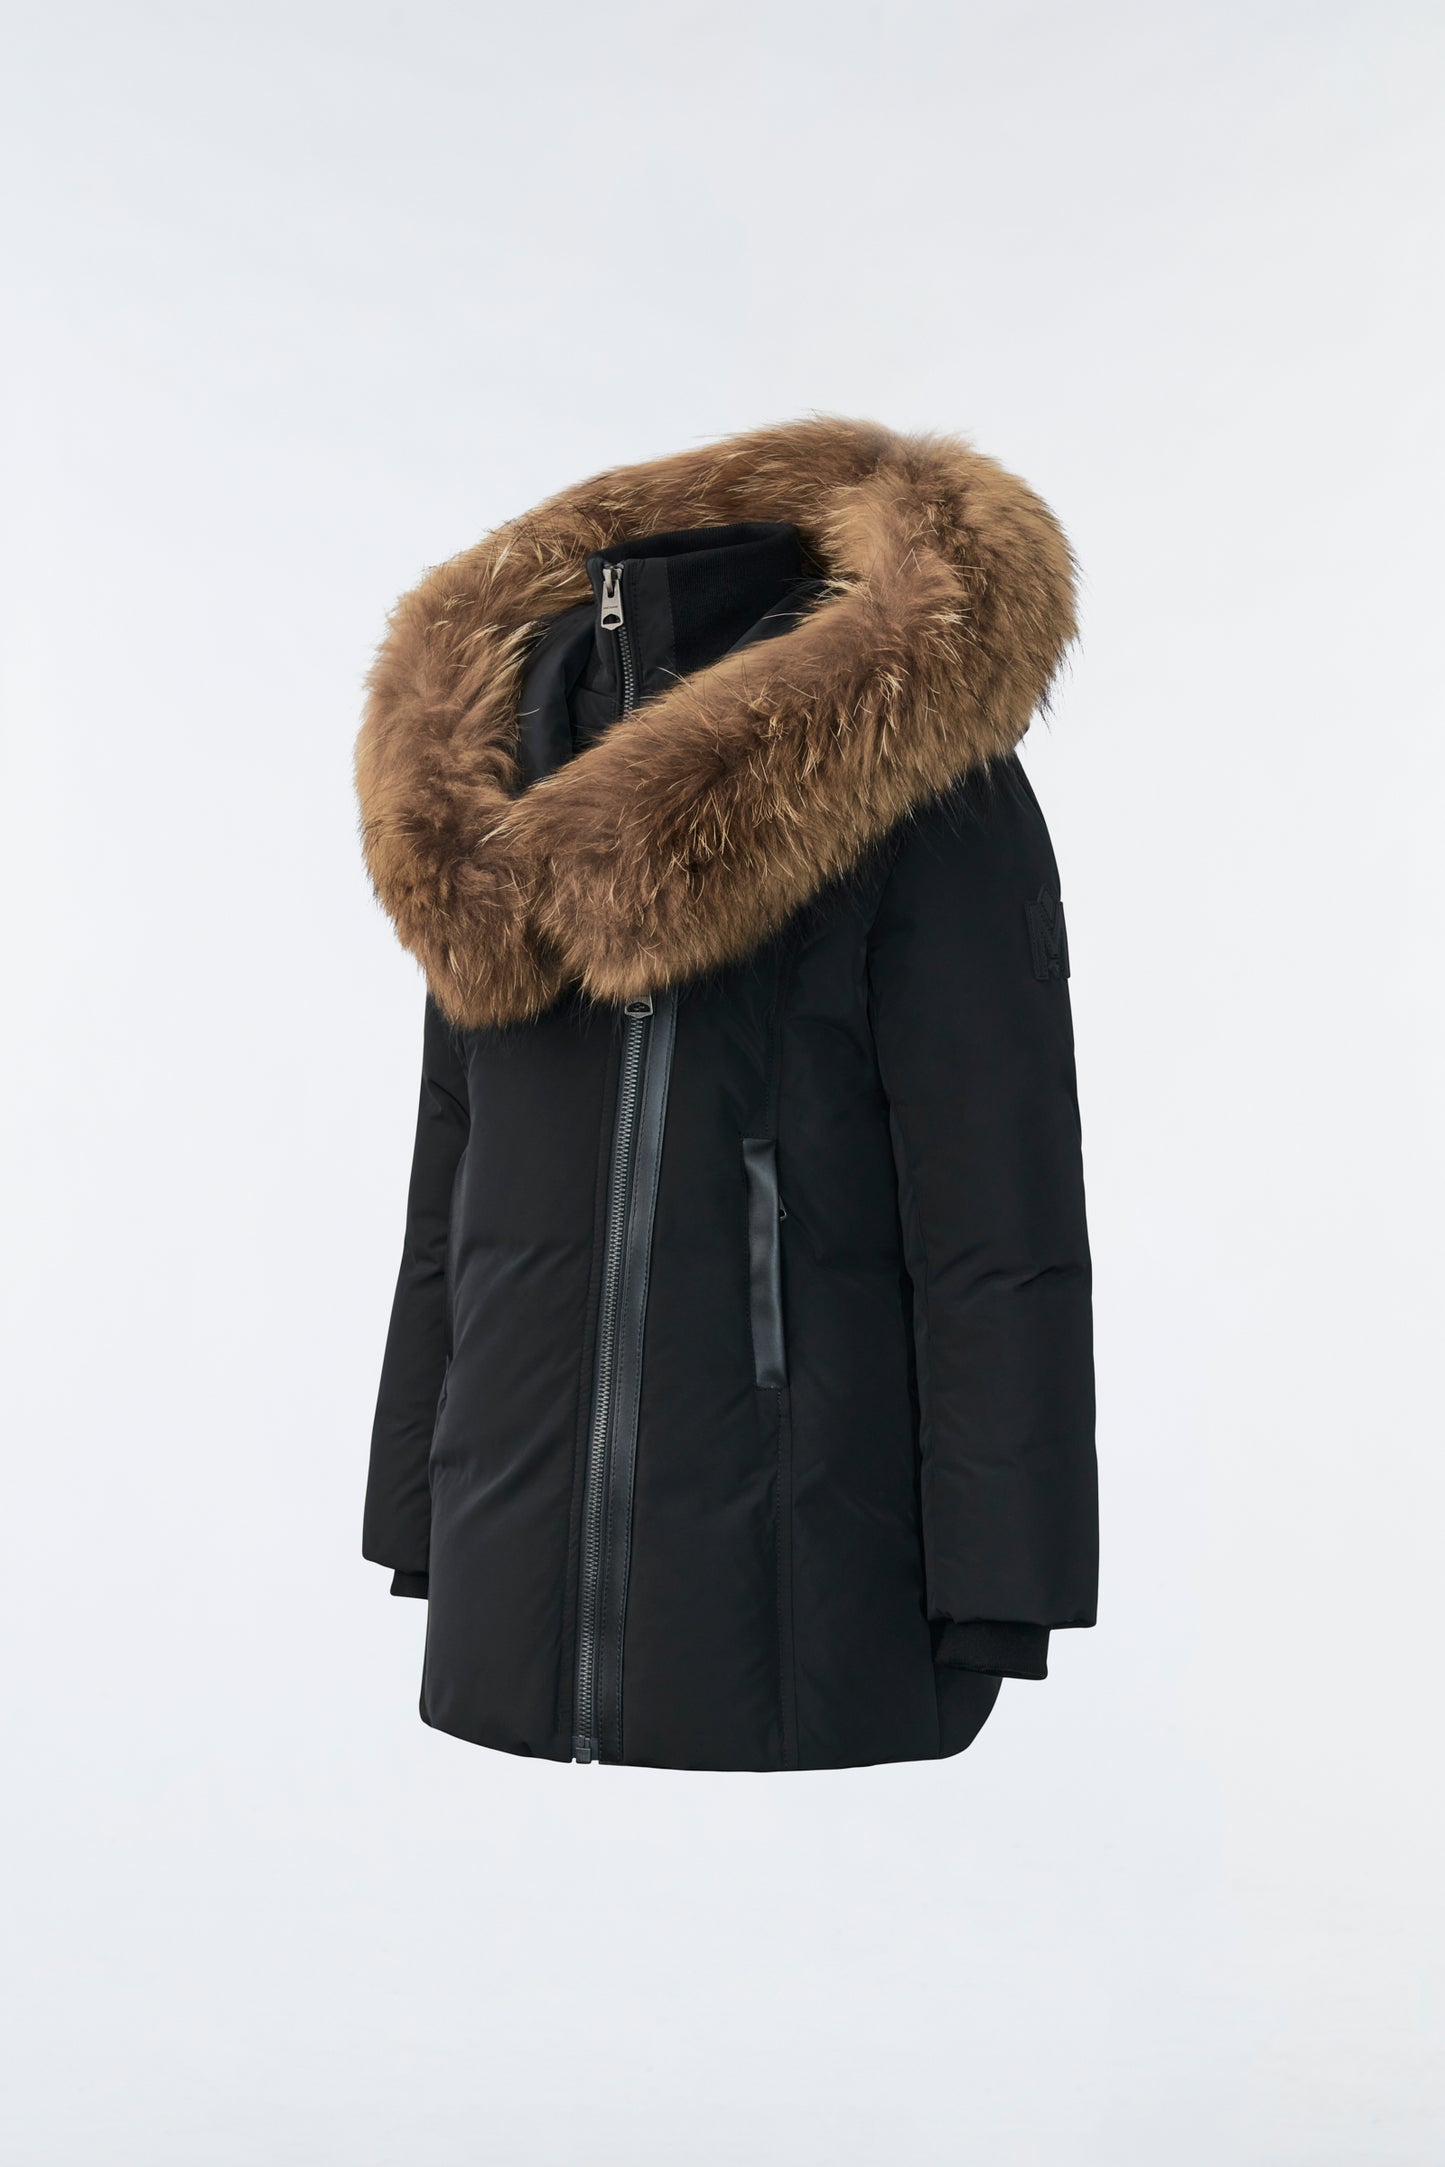 Mackage LeeLee Girls Down Coat w/ Fur Trim Hood